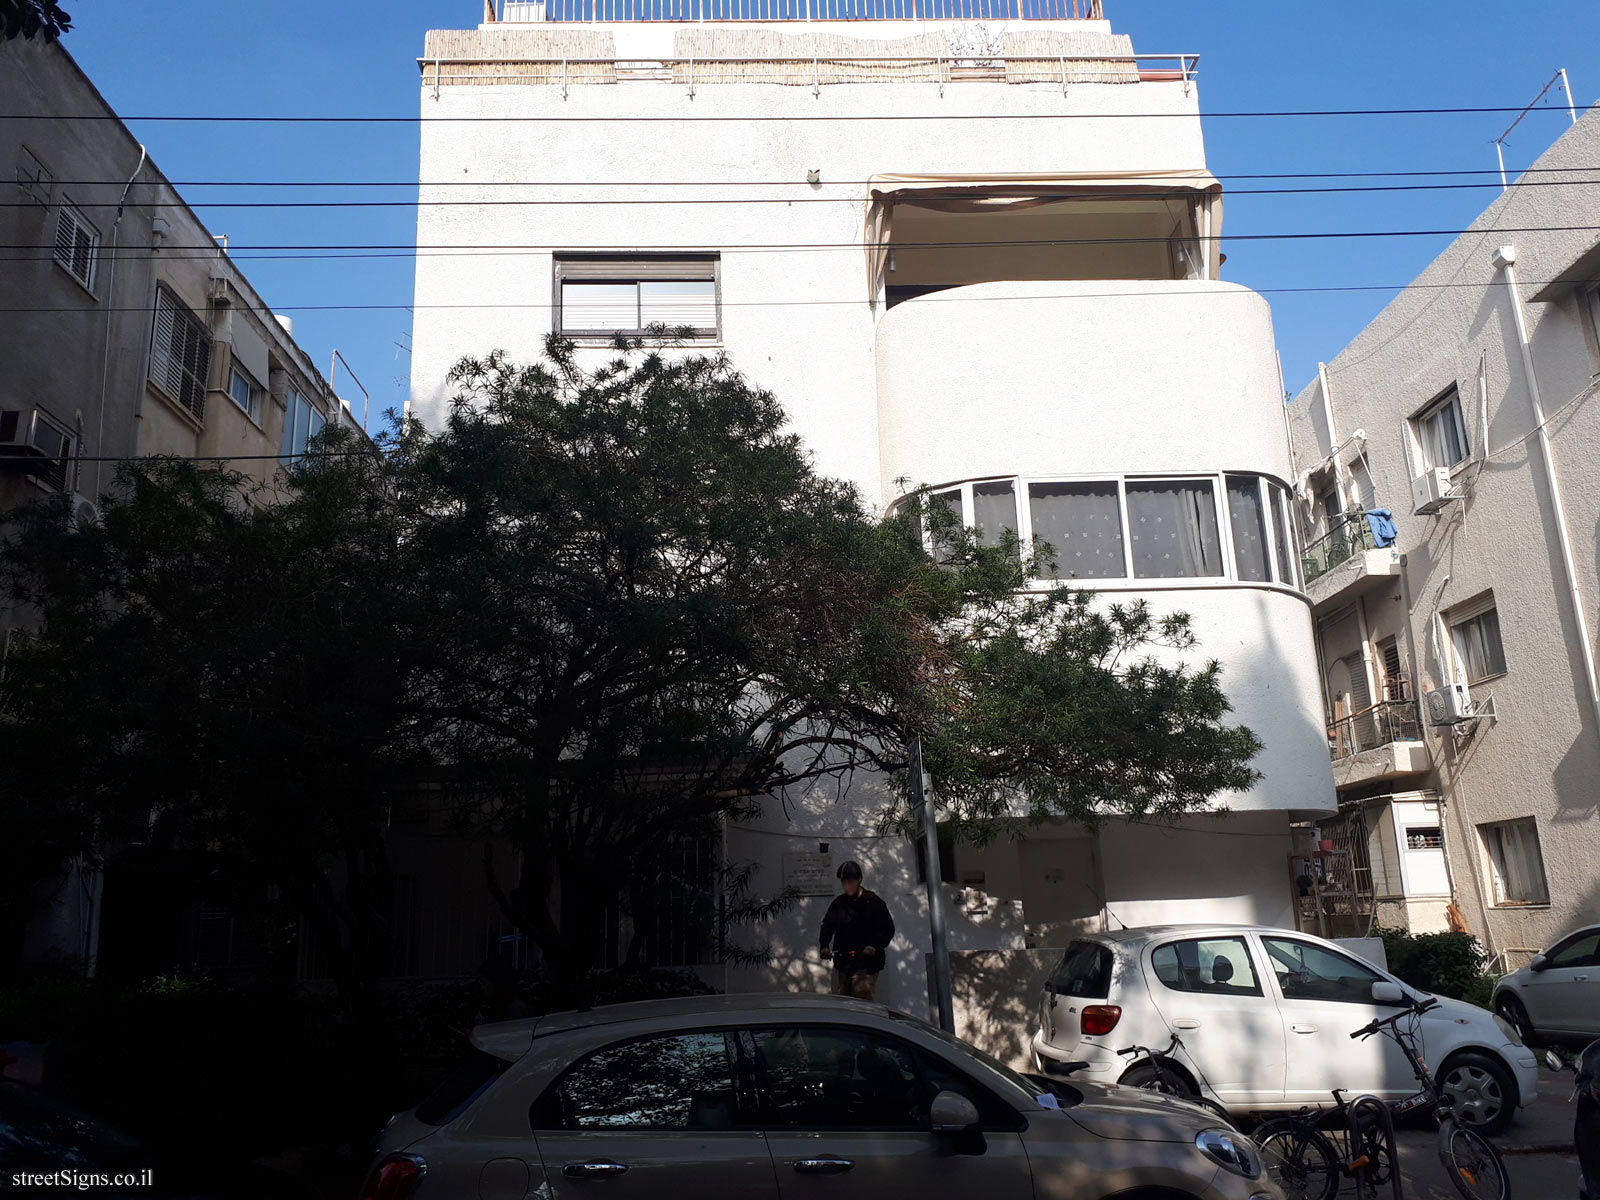 The house of Menachem Avidom - Shtand St 7, Tel Aviv-Yafo, Israel